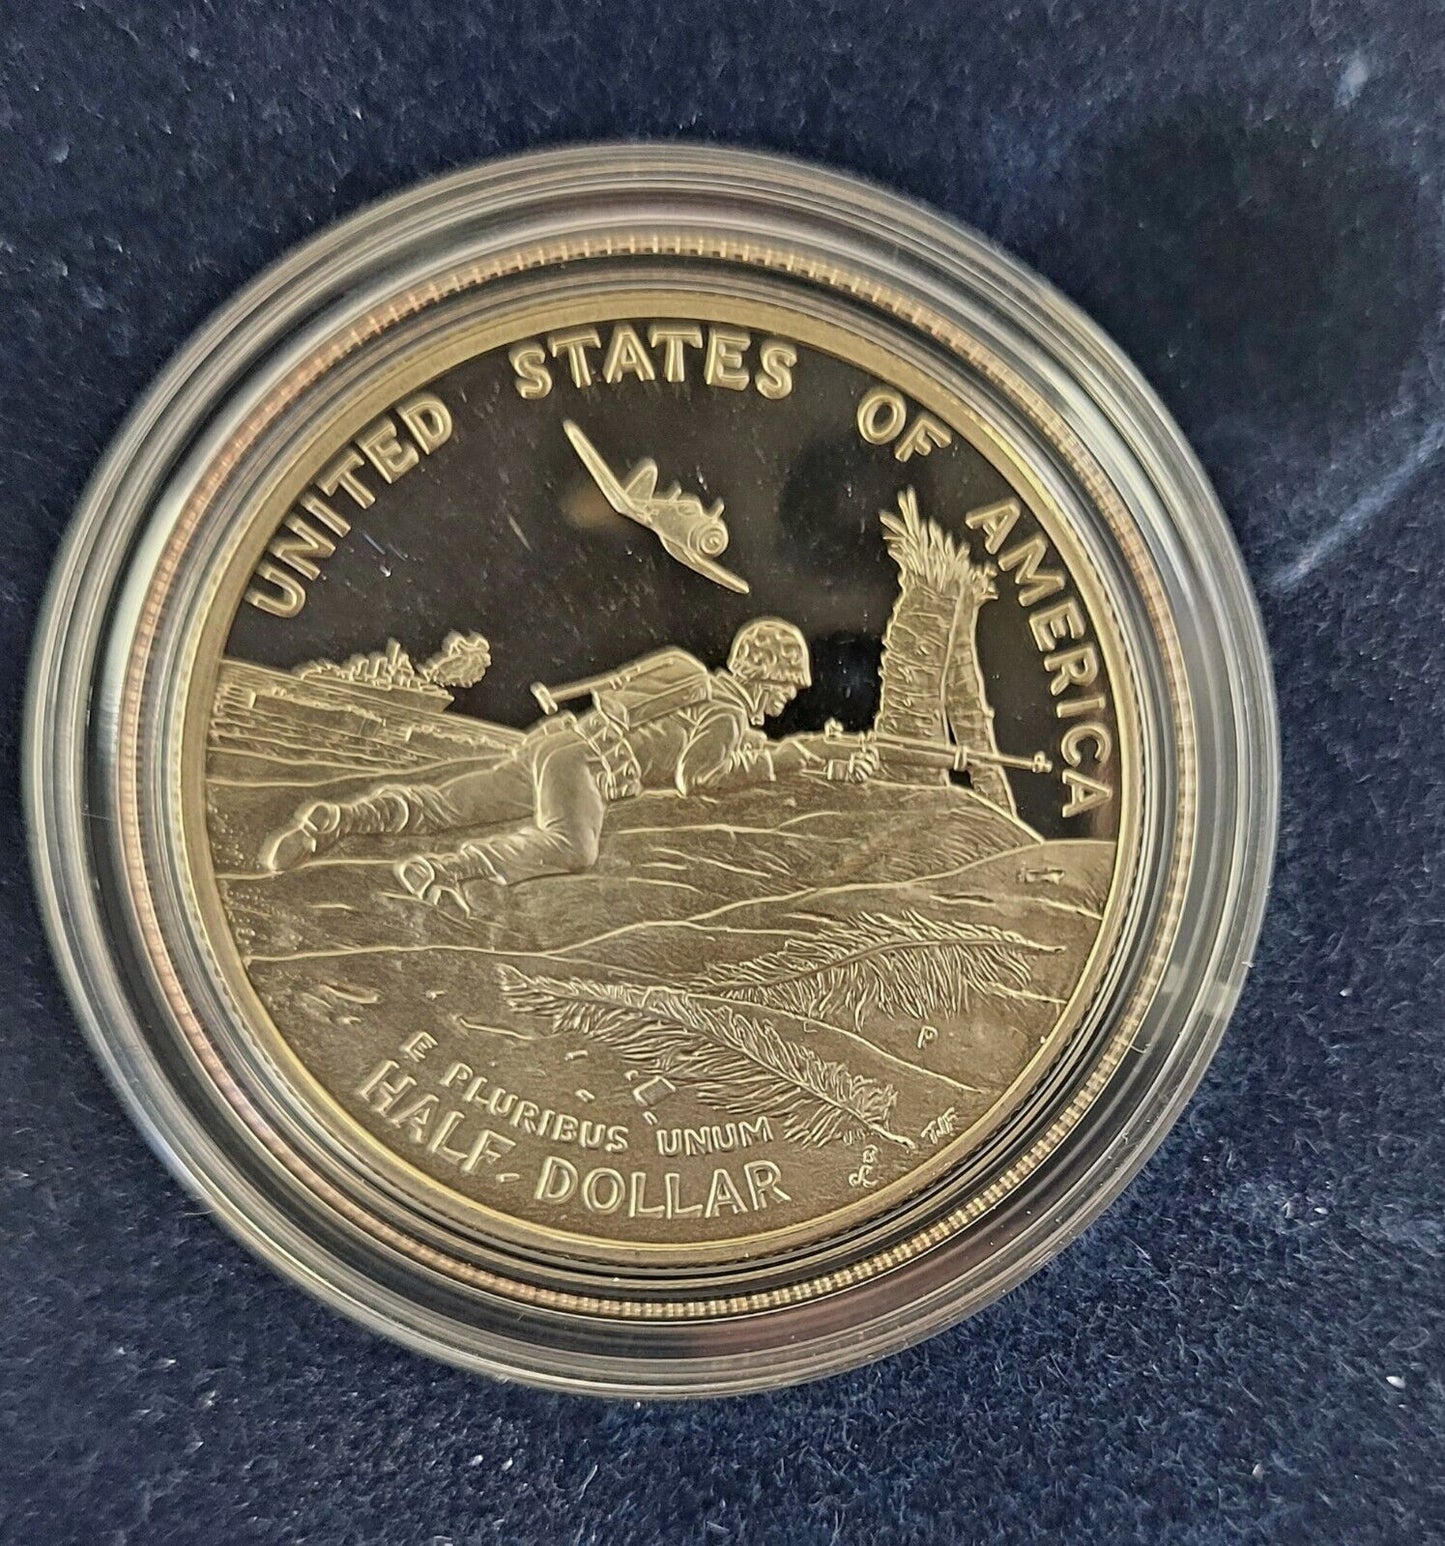 World War II 50th Anniversary 2-Coin Set Silver Dollar & Half Dollar COA Boxed